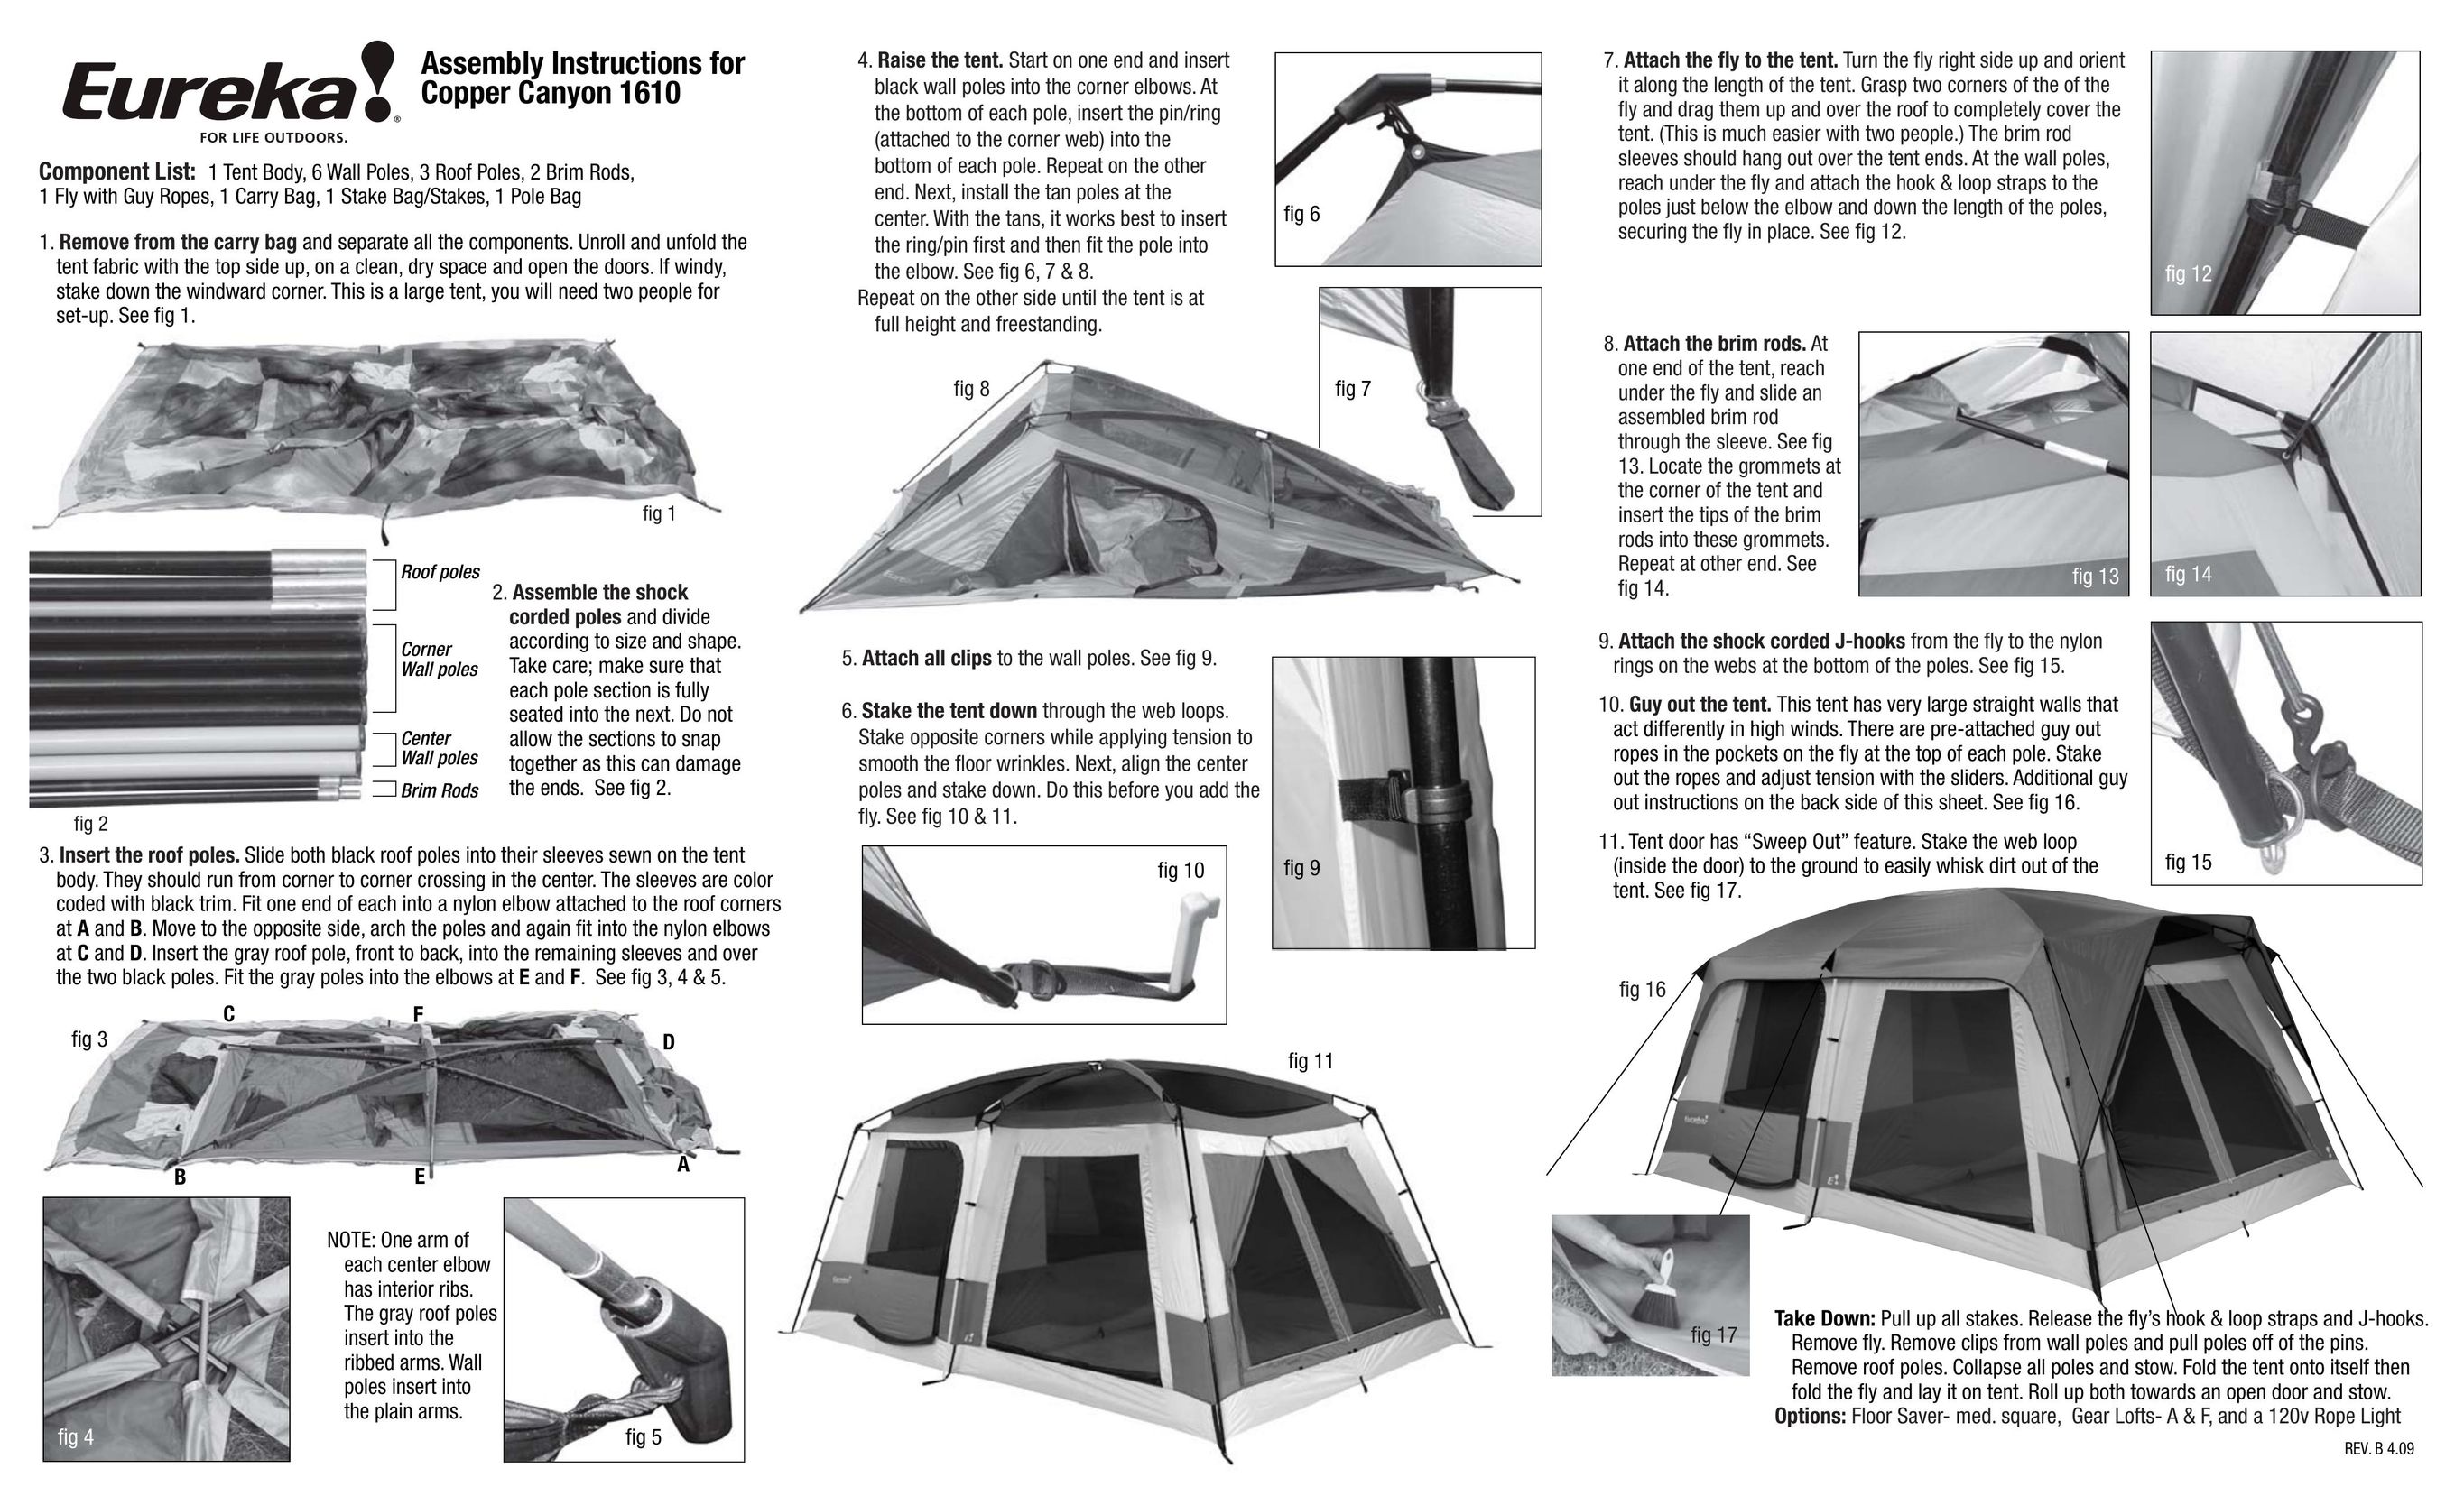 Eureka! Tents Copper Canyon 1610 Tent User Manual